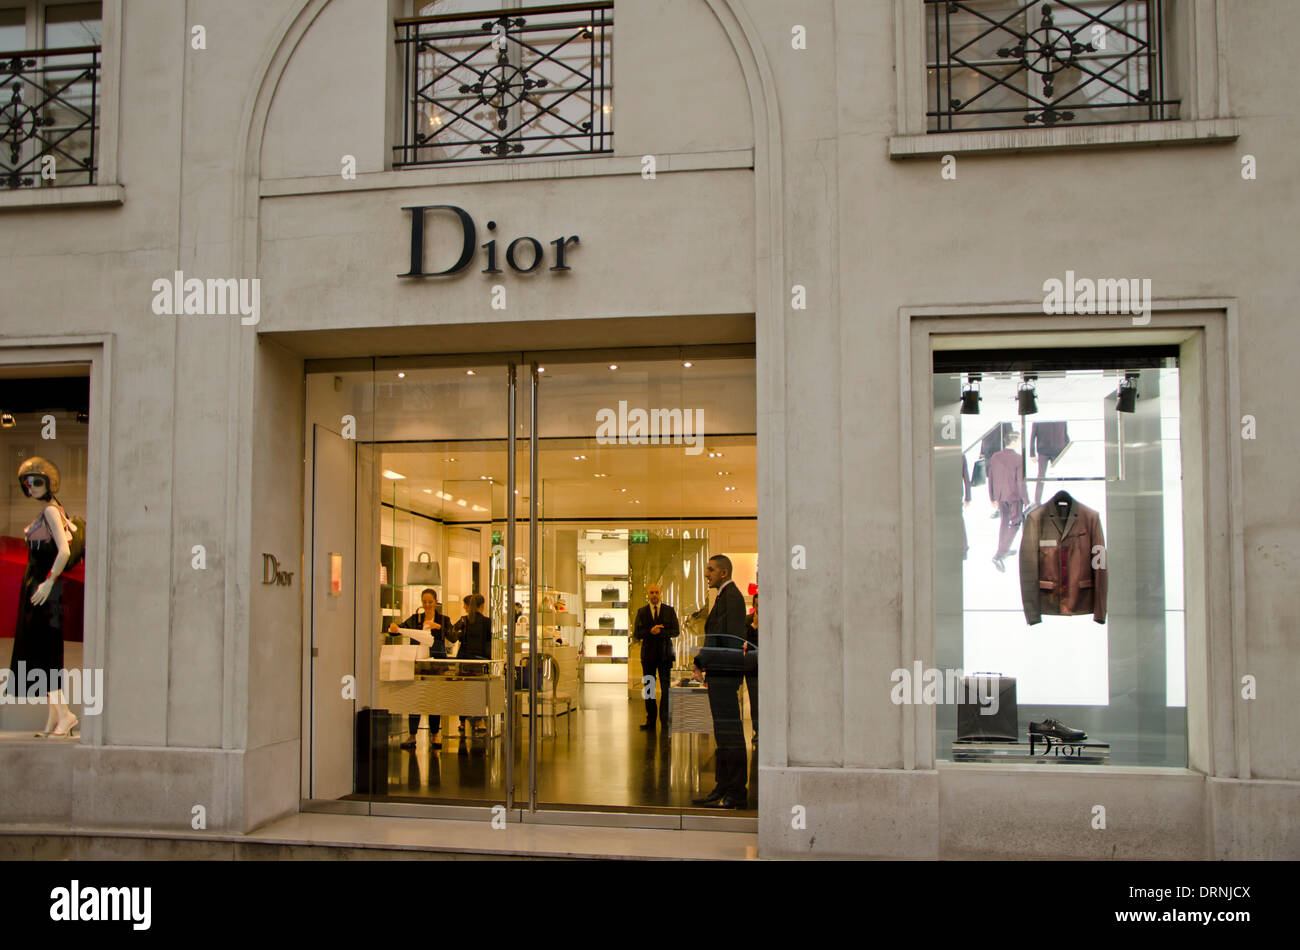 Façade d'une boutique de mode Christian Dior, boutique, à Paris, France